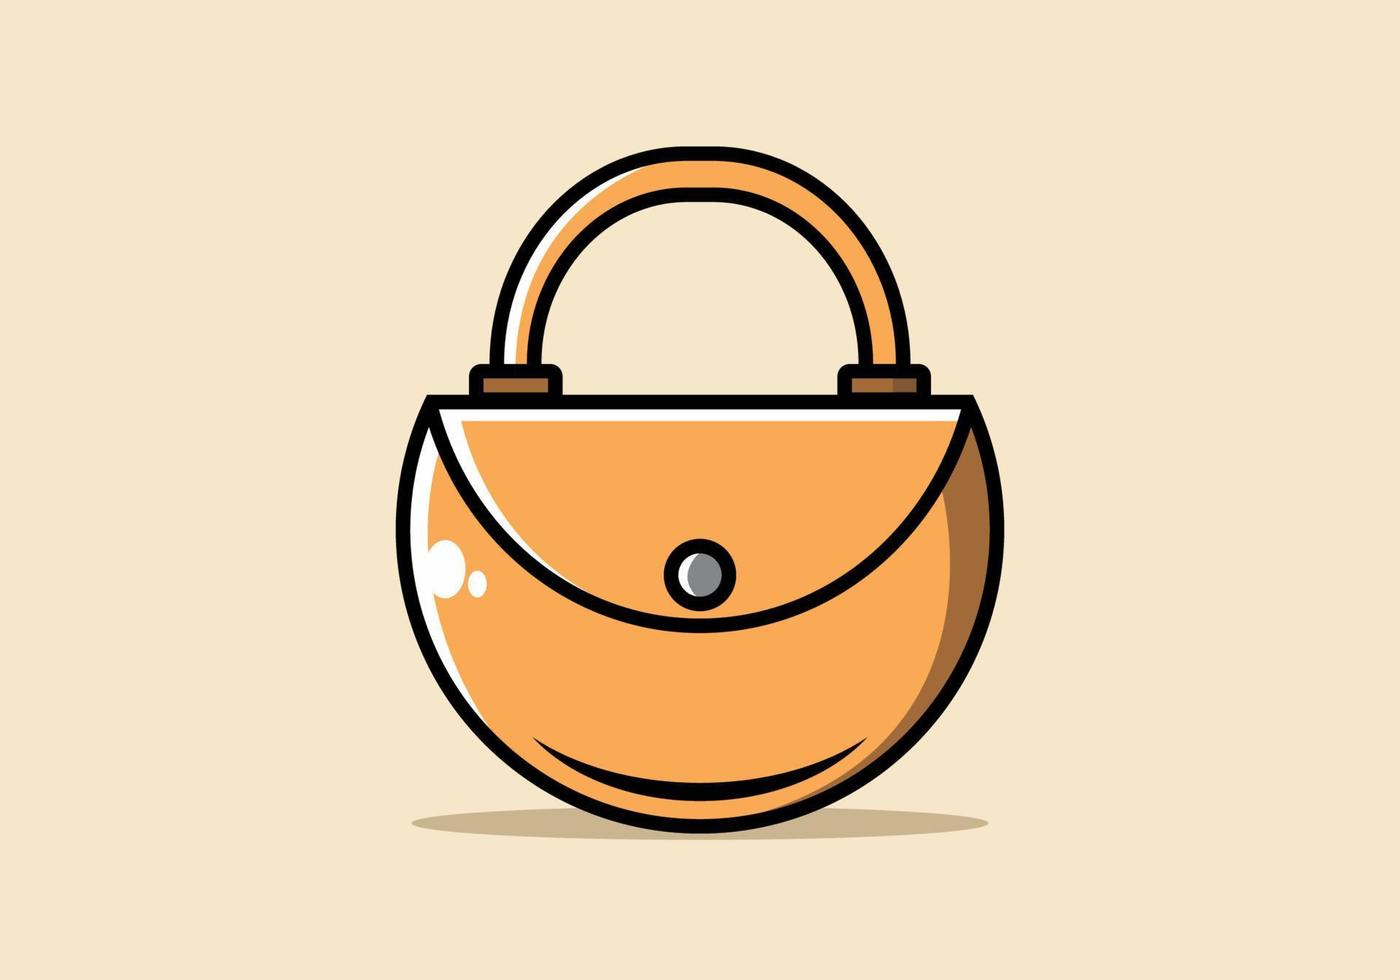 couleur orange de l'illustration du sac femme vecteur